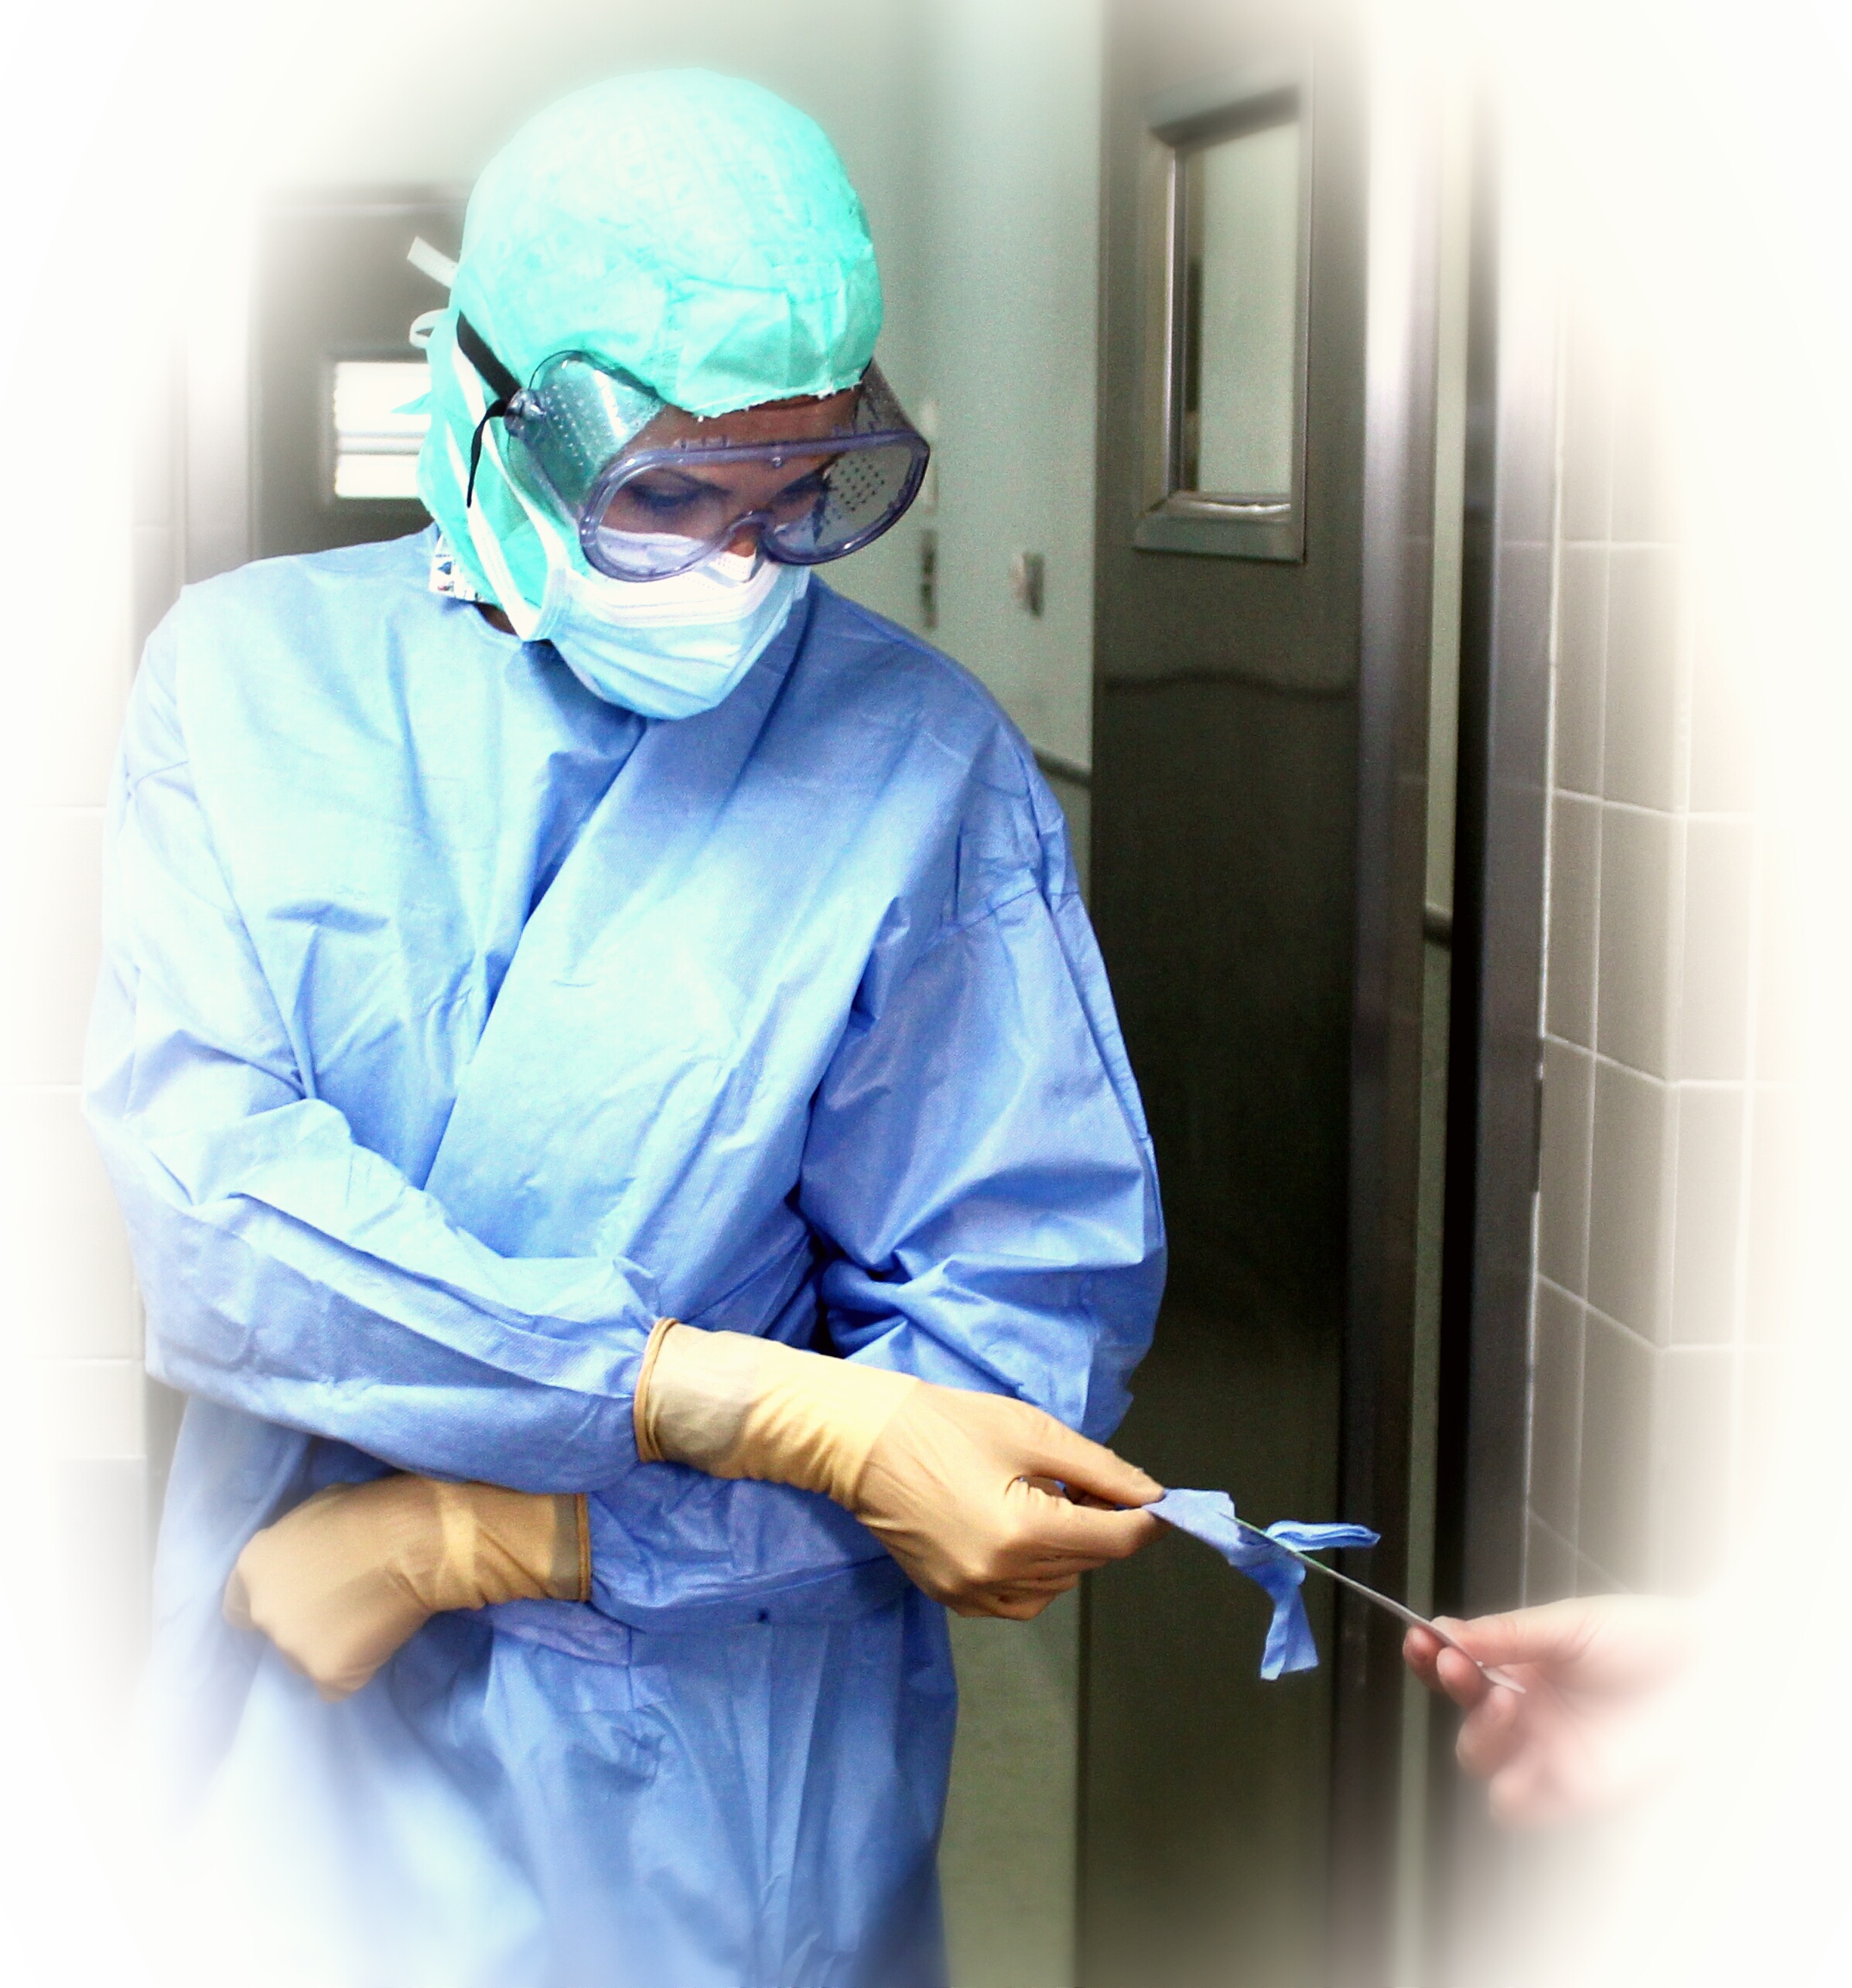 La enfermera Belen Martínez cogiendo un bisturí en un quirófano